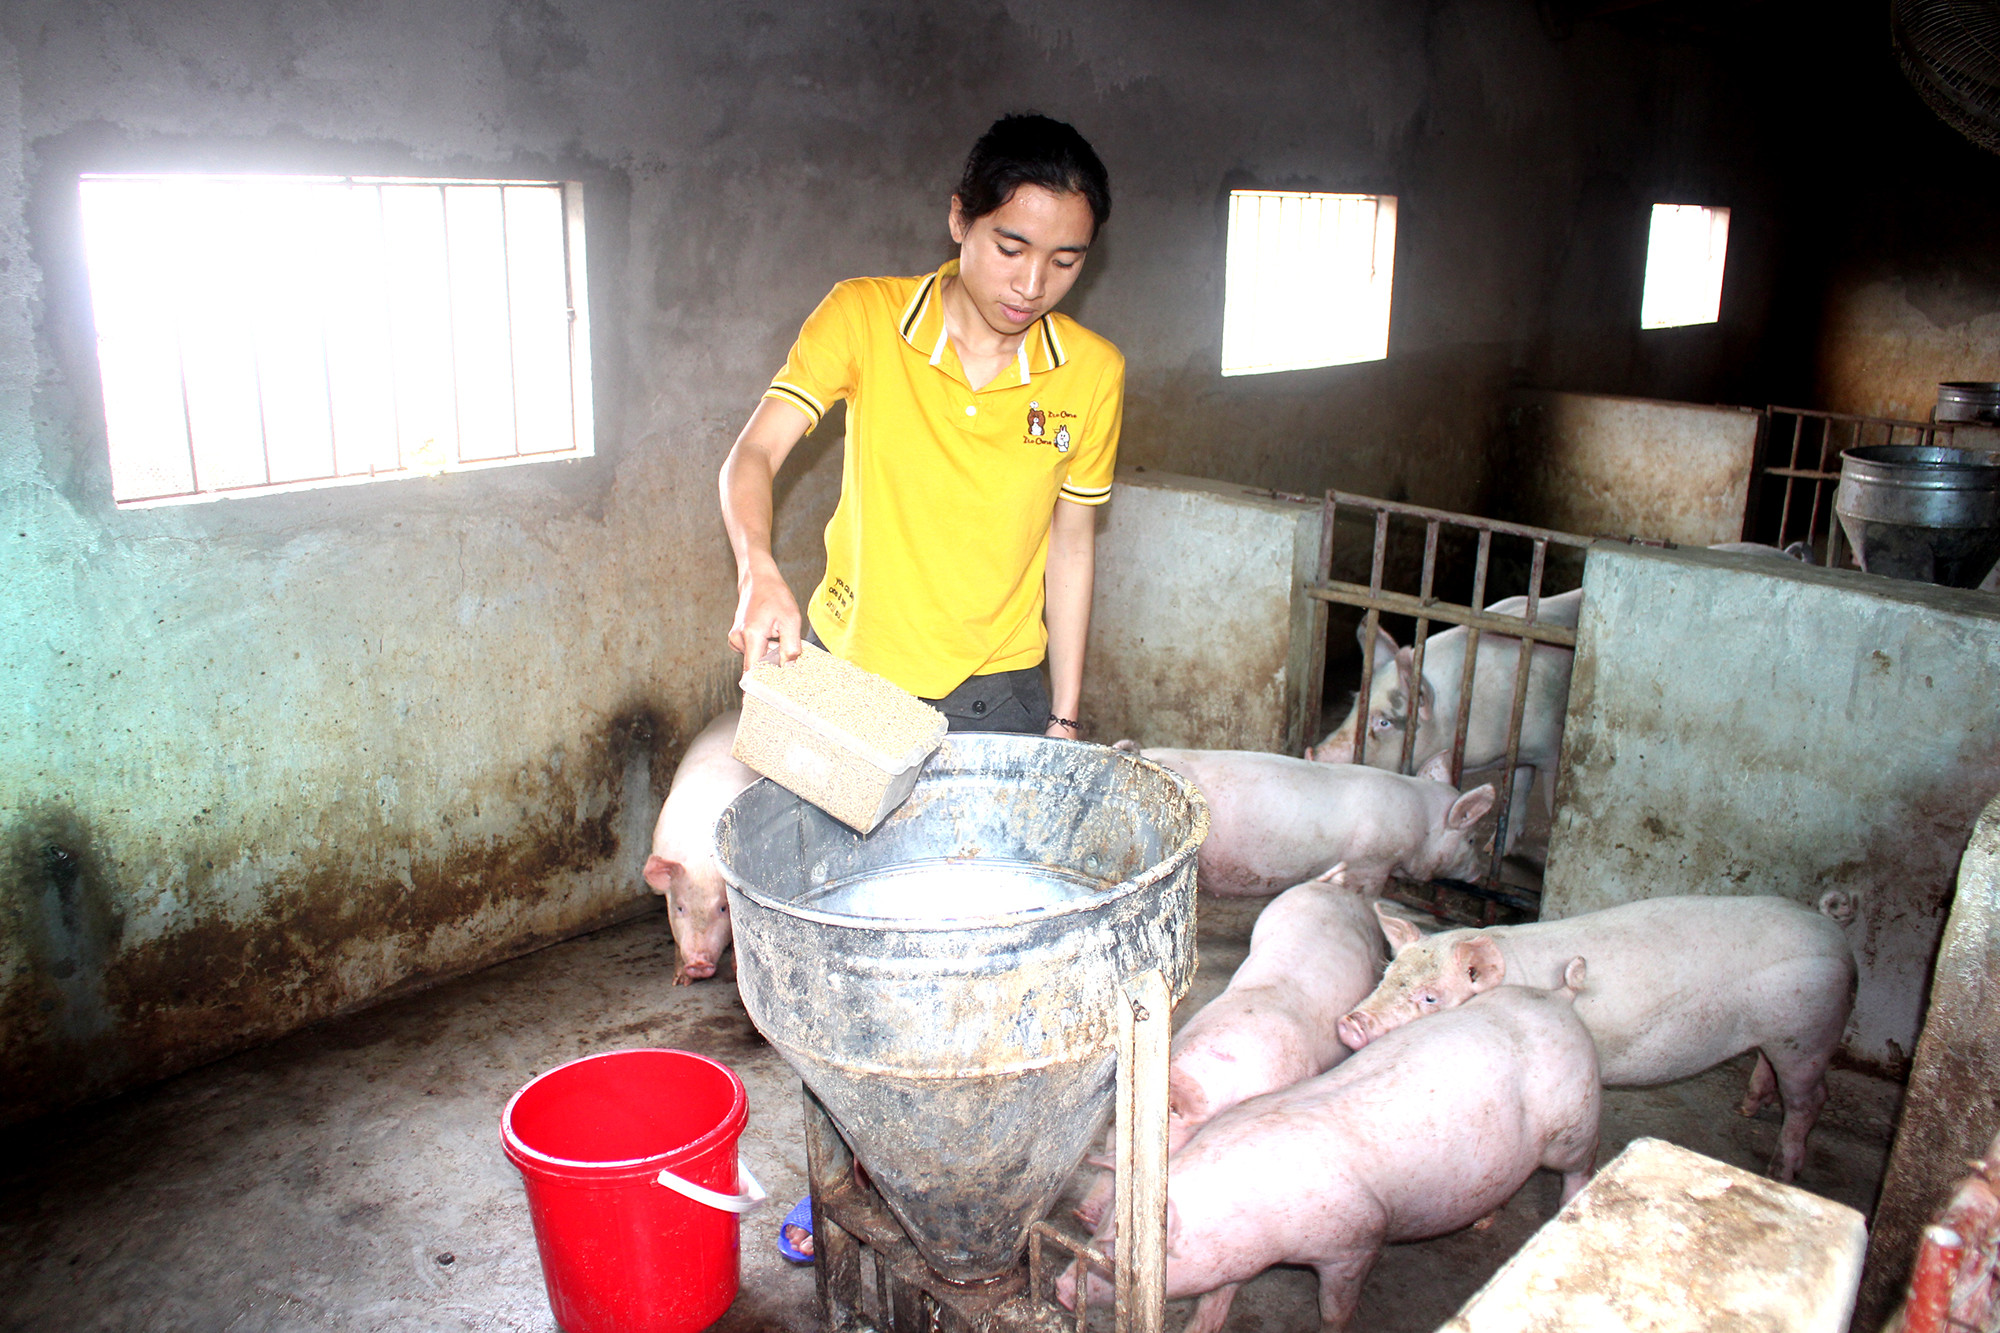 Giá lợn hơi xuống thấp, người chăn nuôi phải bù lỗ 300-500.000 đồng/con, thậm chí cả triệu đồng/con lợn thịt xuất chuồng. Ảnh: Thanh Phúc